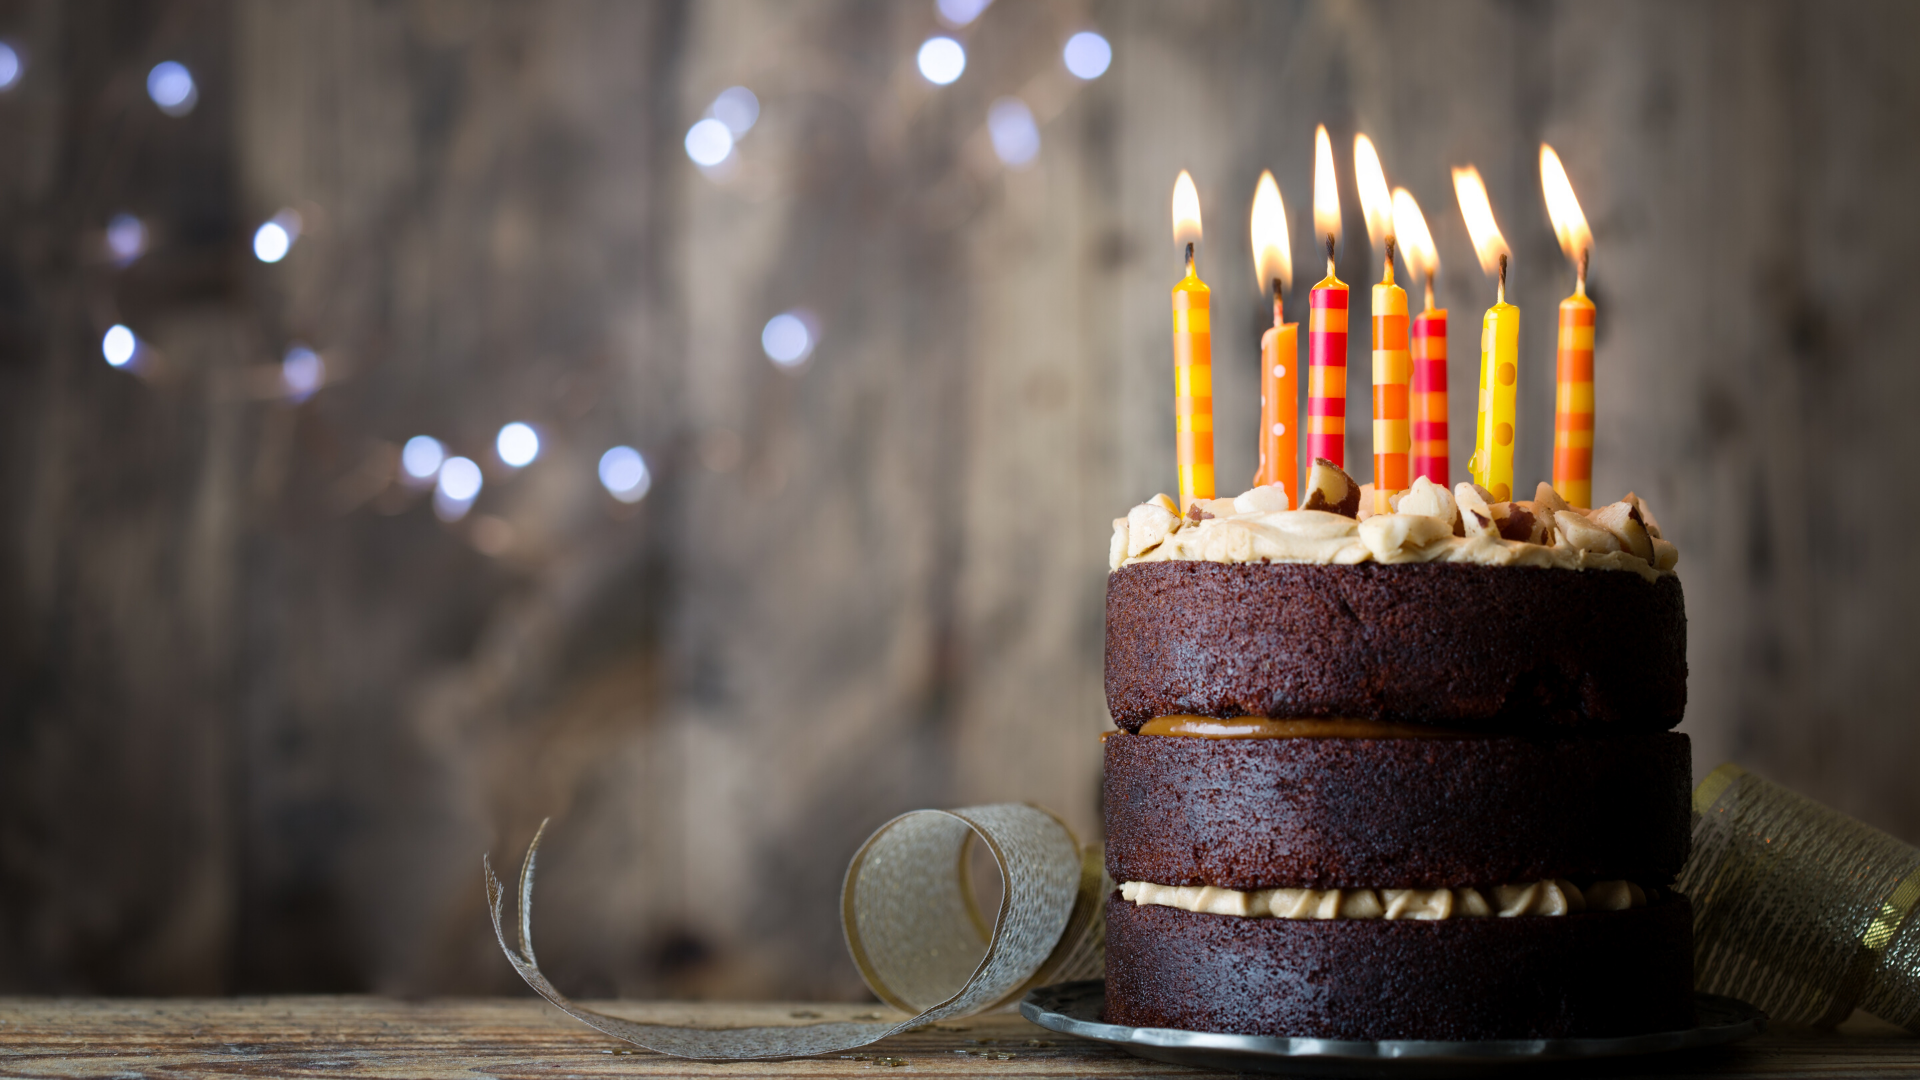 Des bougies originales pour vos gâteaux d'anniversaire !